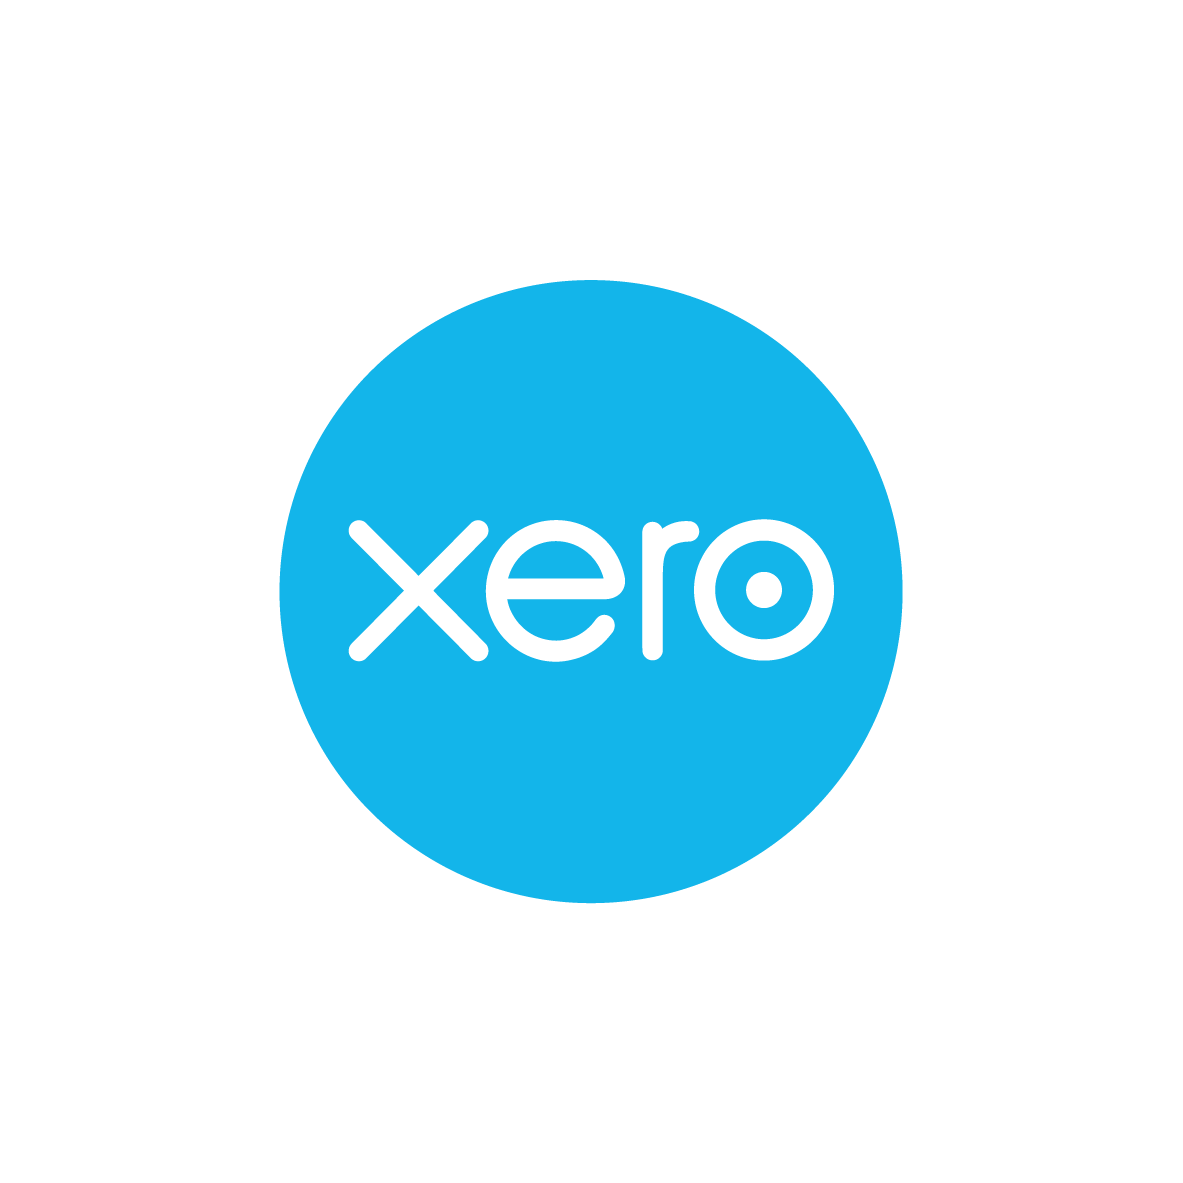 xero partner logo<br />
